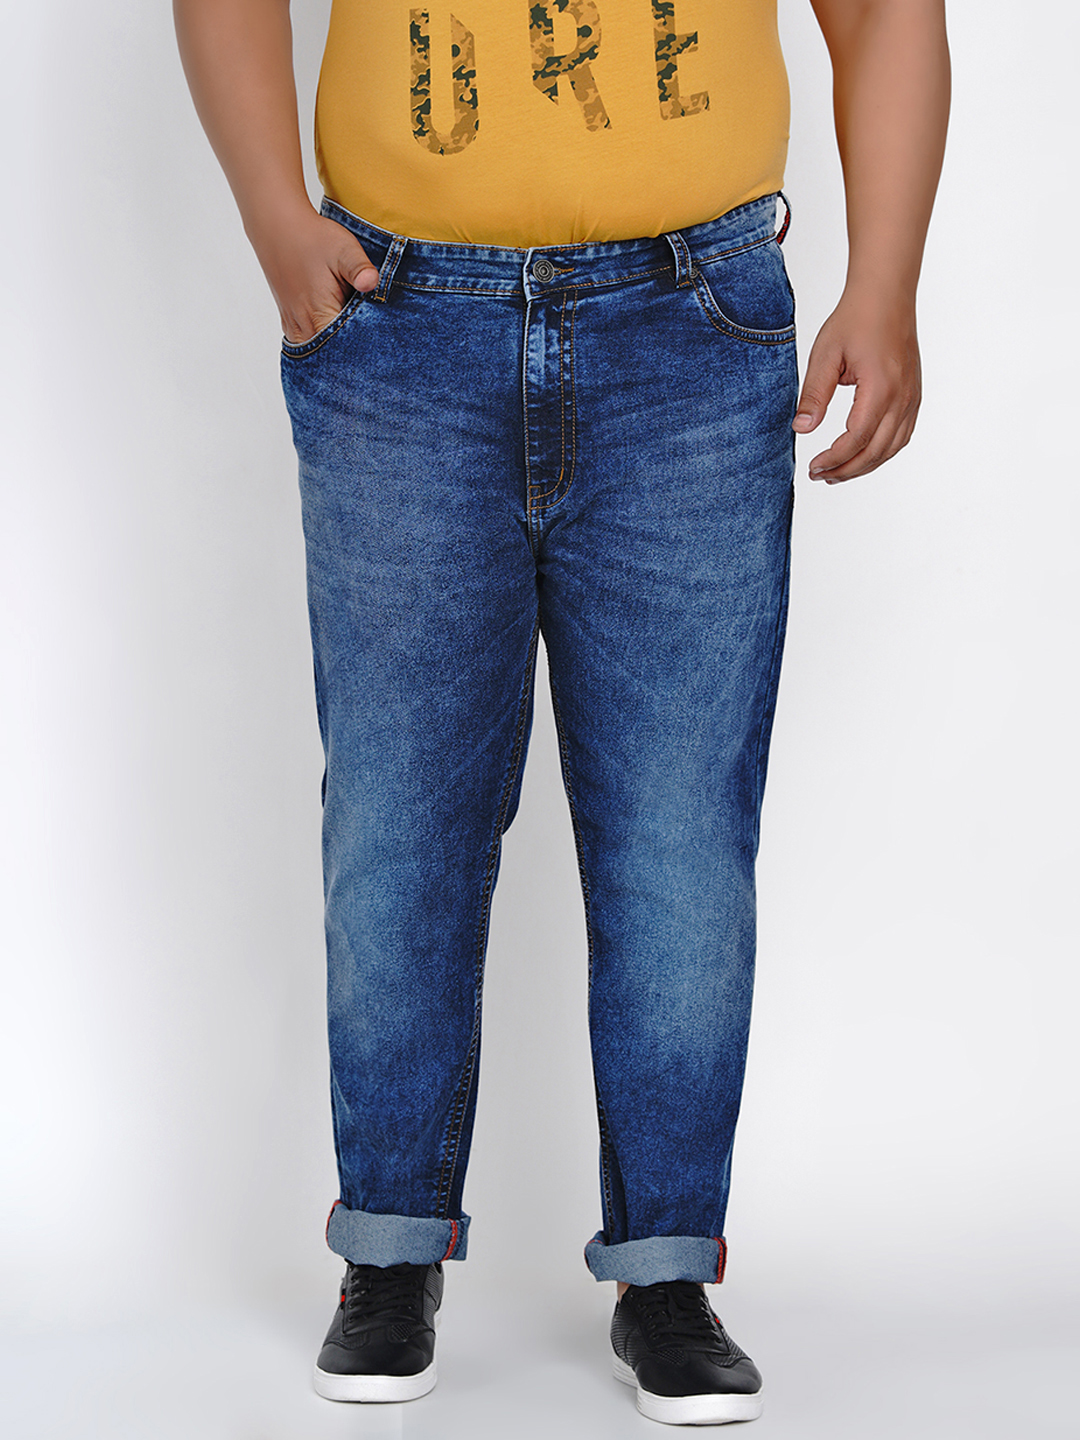 affordables/jeans/JPJ2009/jpj2009-2.jpg